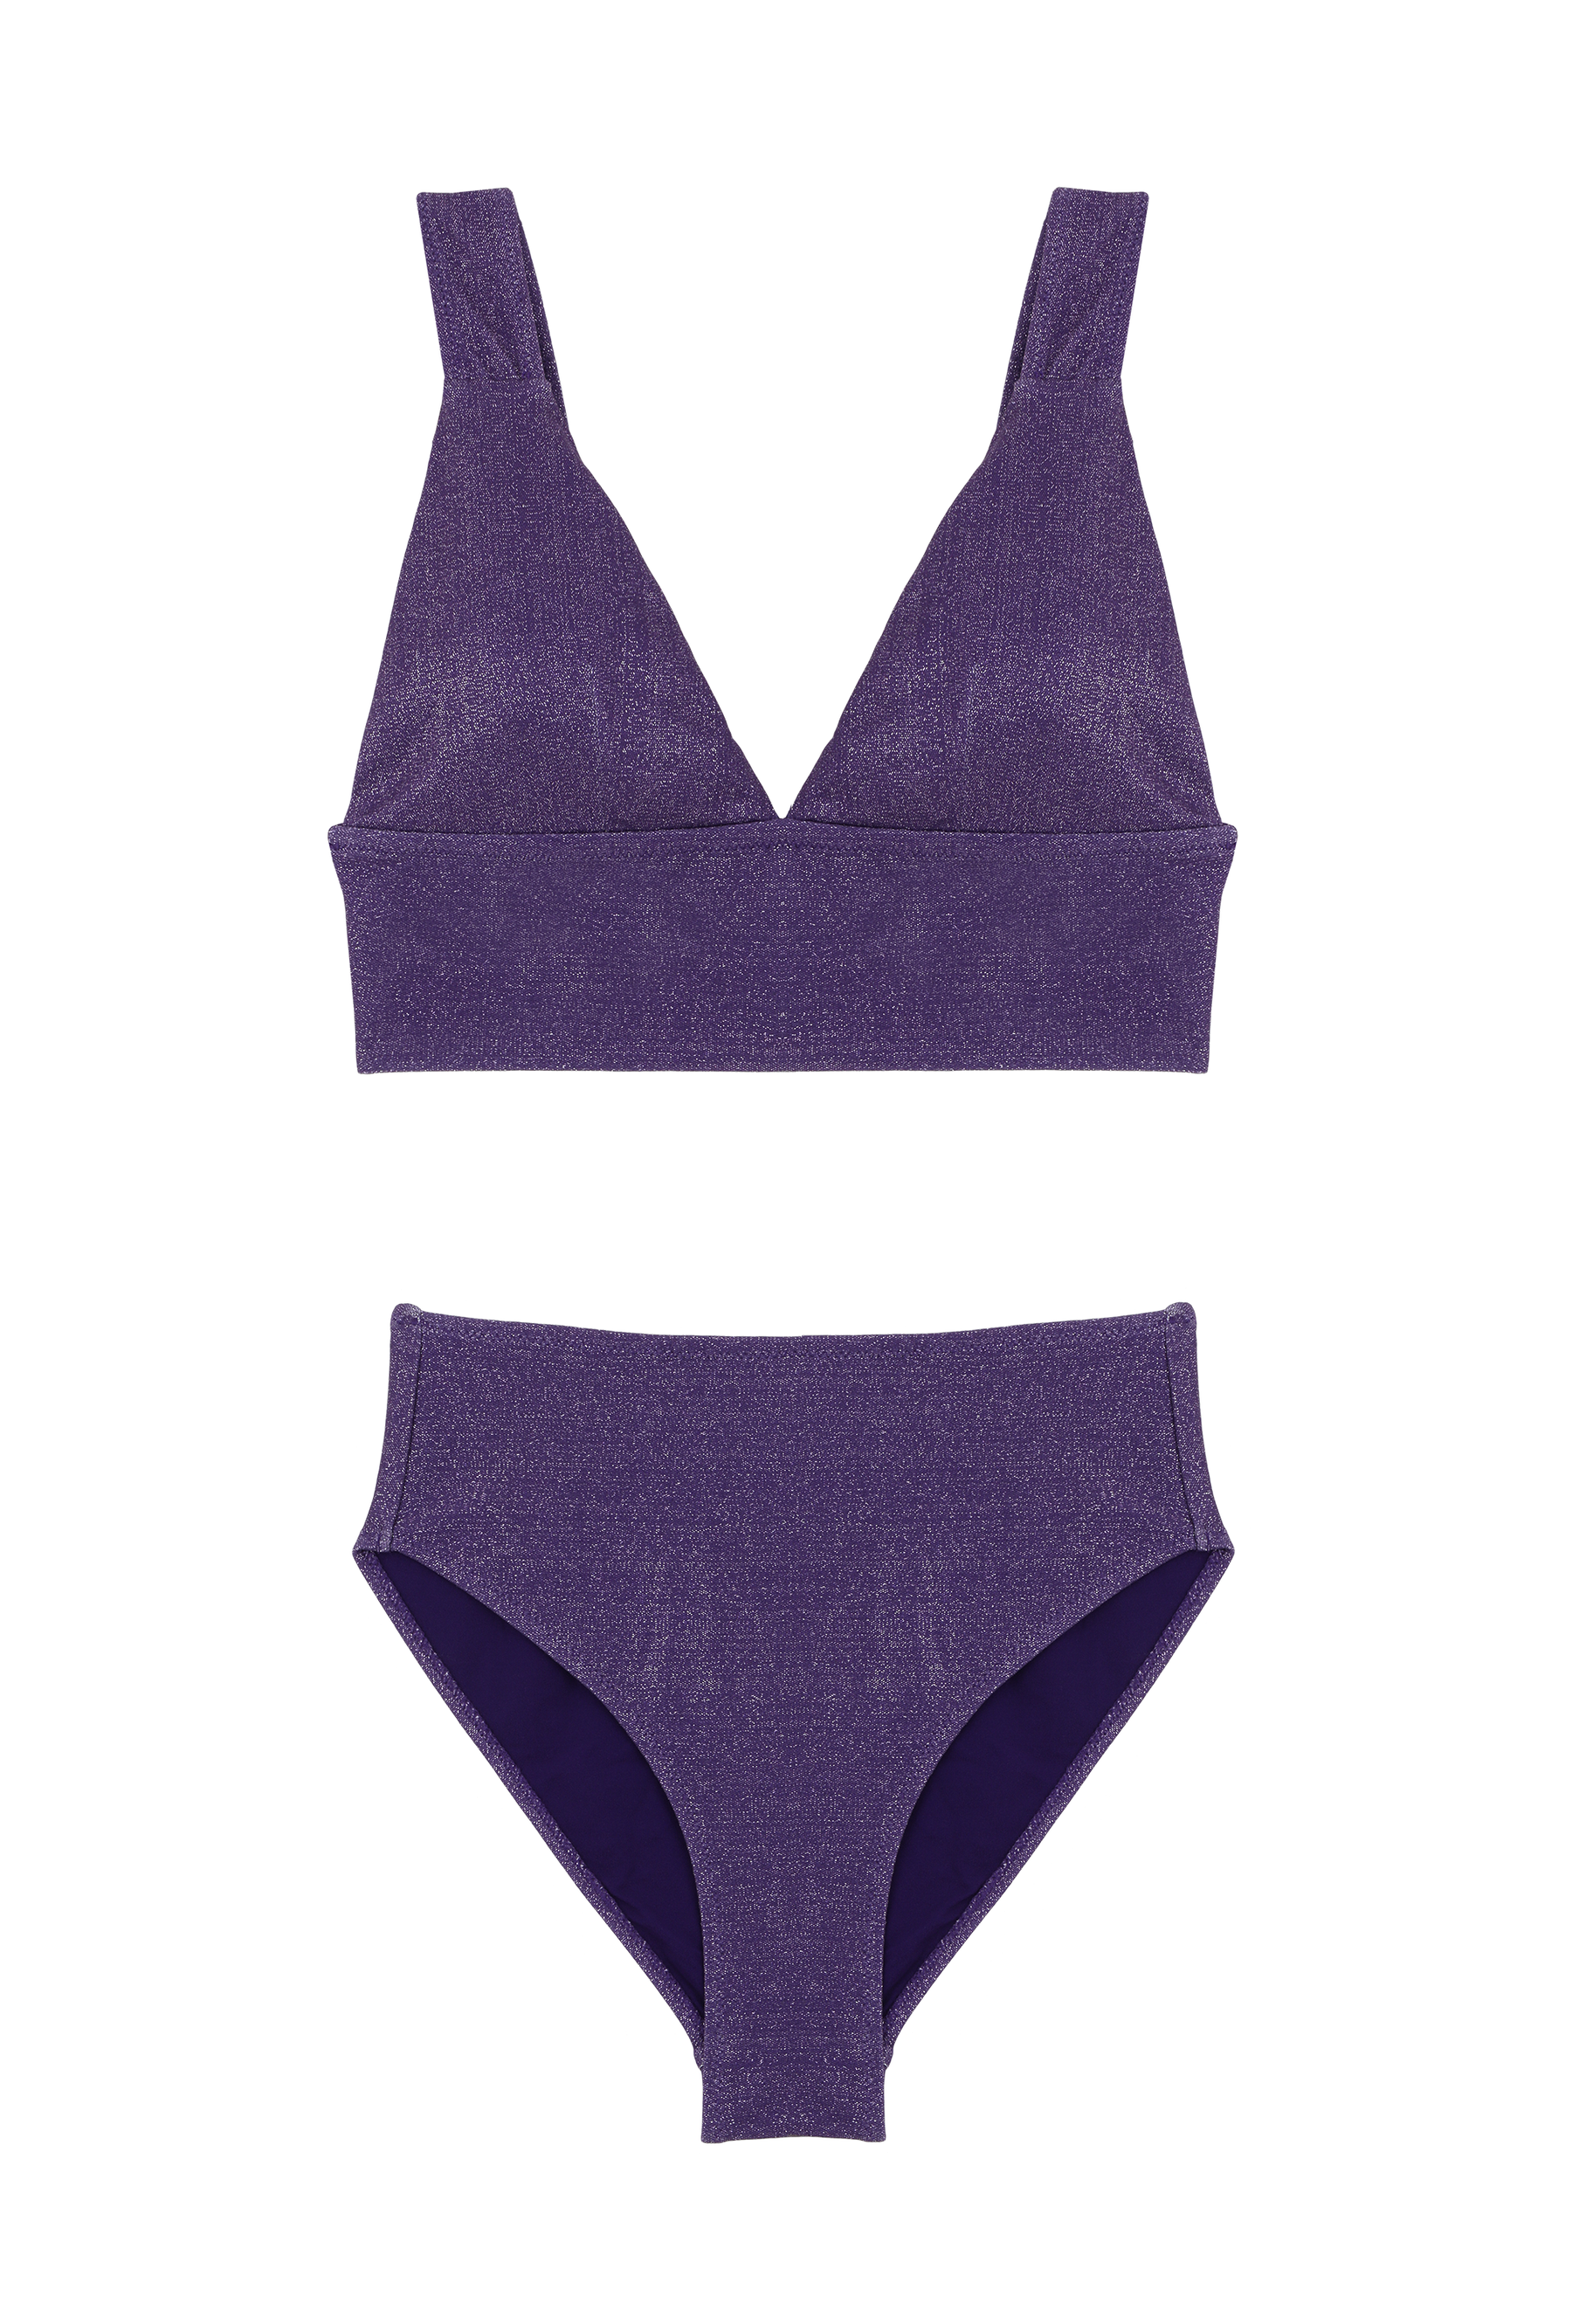 Ensemble maillot Paillettes Violet - Triangle / Taille Haute